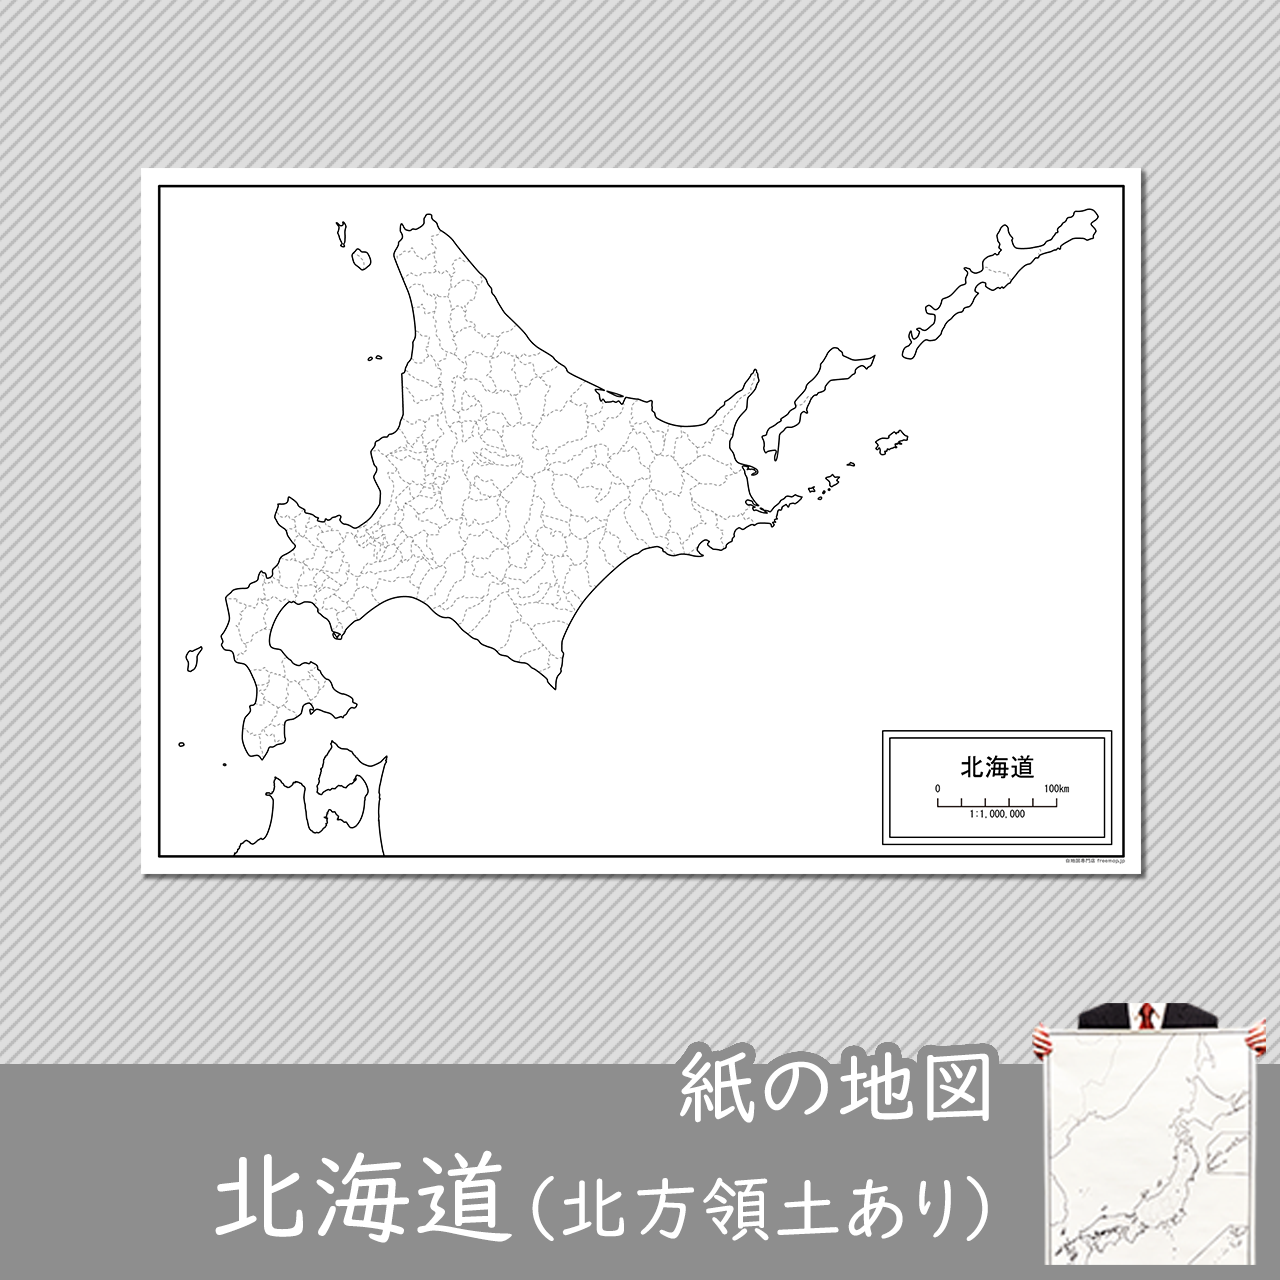 北海道（北方領土あり）の紙の白地図のサムネイル